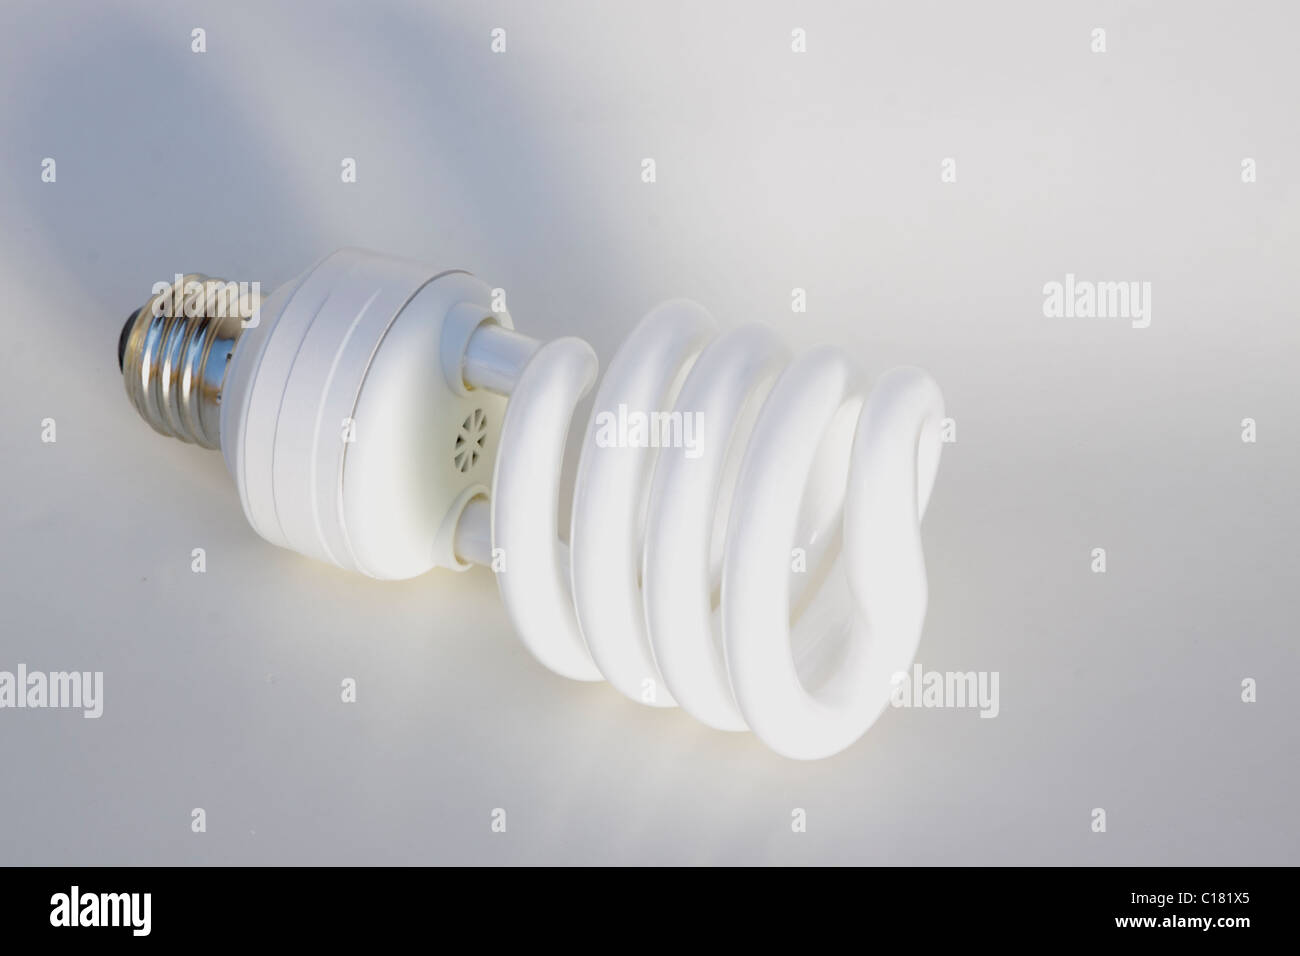 Lámpara fluorescente compacta de ahorro de energía energía verde CFL Foto de stock